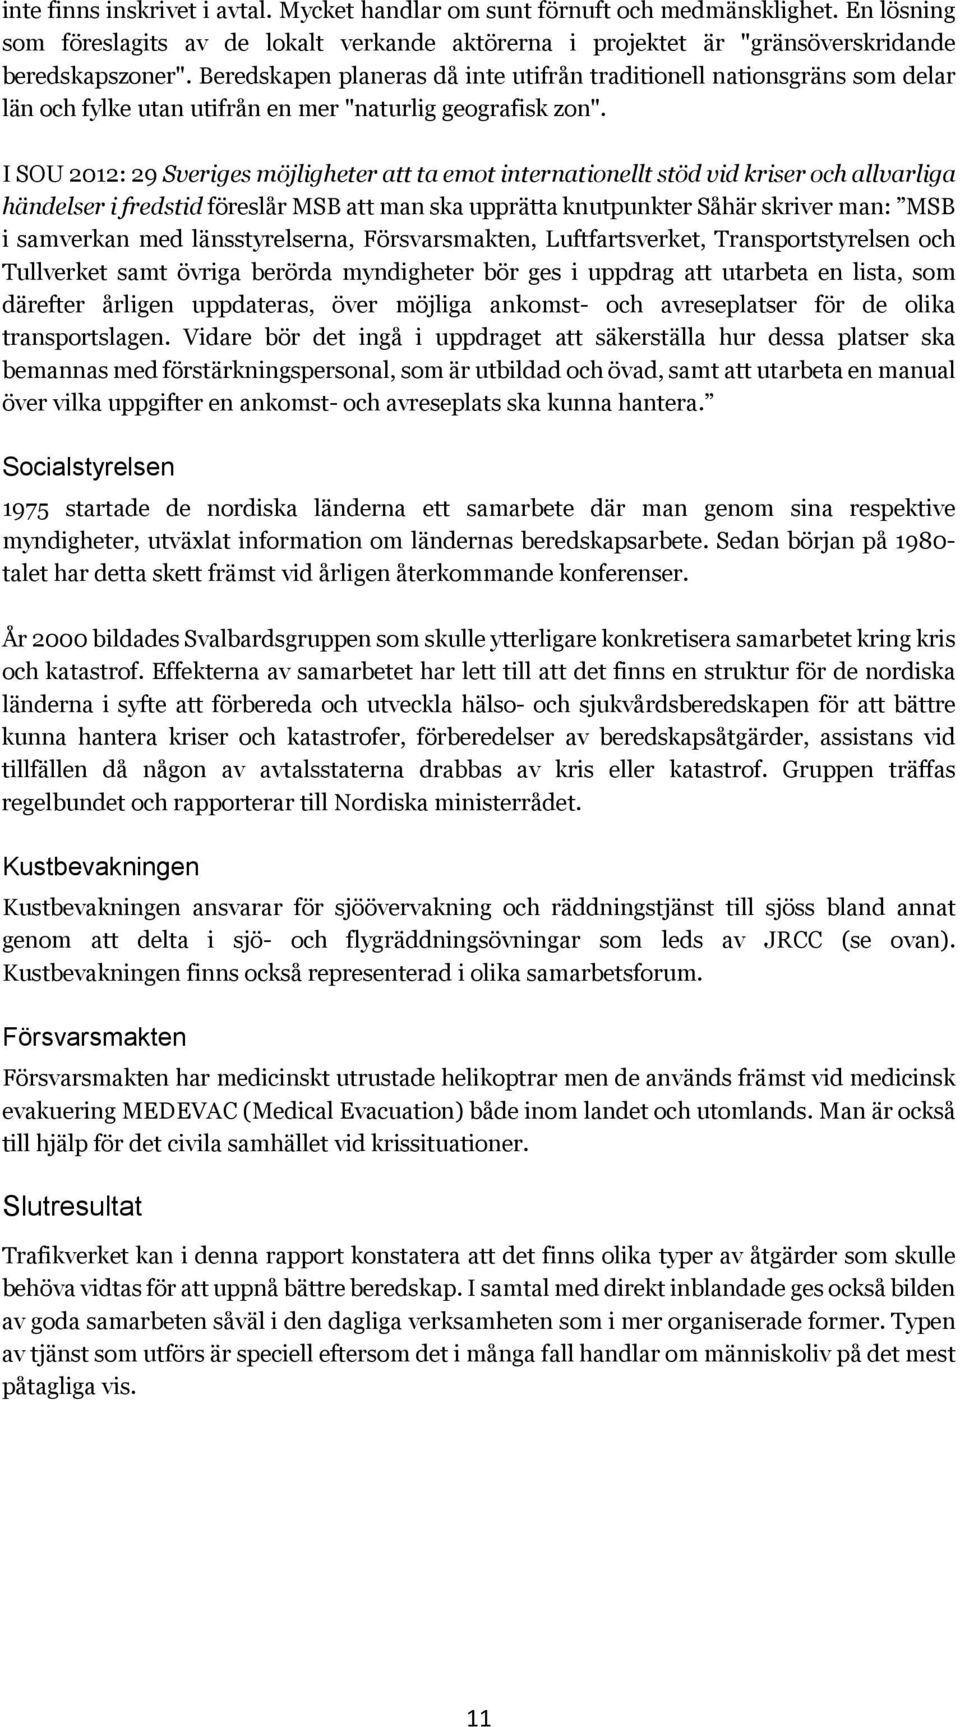 I SOU 2012: 29 Sveriges möjligheter att ta emot internationellt stöd vid kriser och allvarliga händelser i fredstid föreslår MSB att man ska upprätta knutpunkter Såhär skriver man: MSB i samverkan